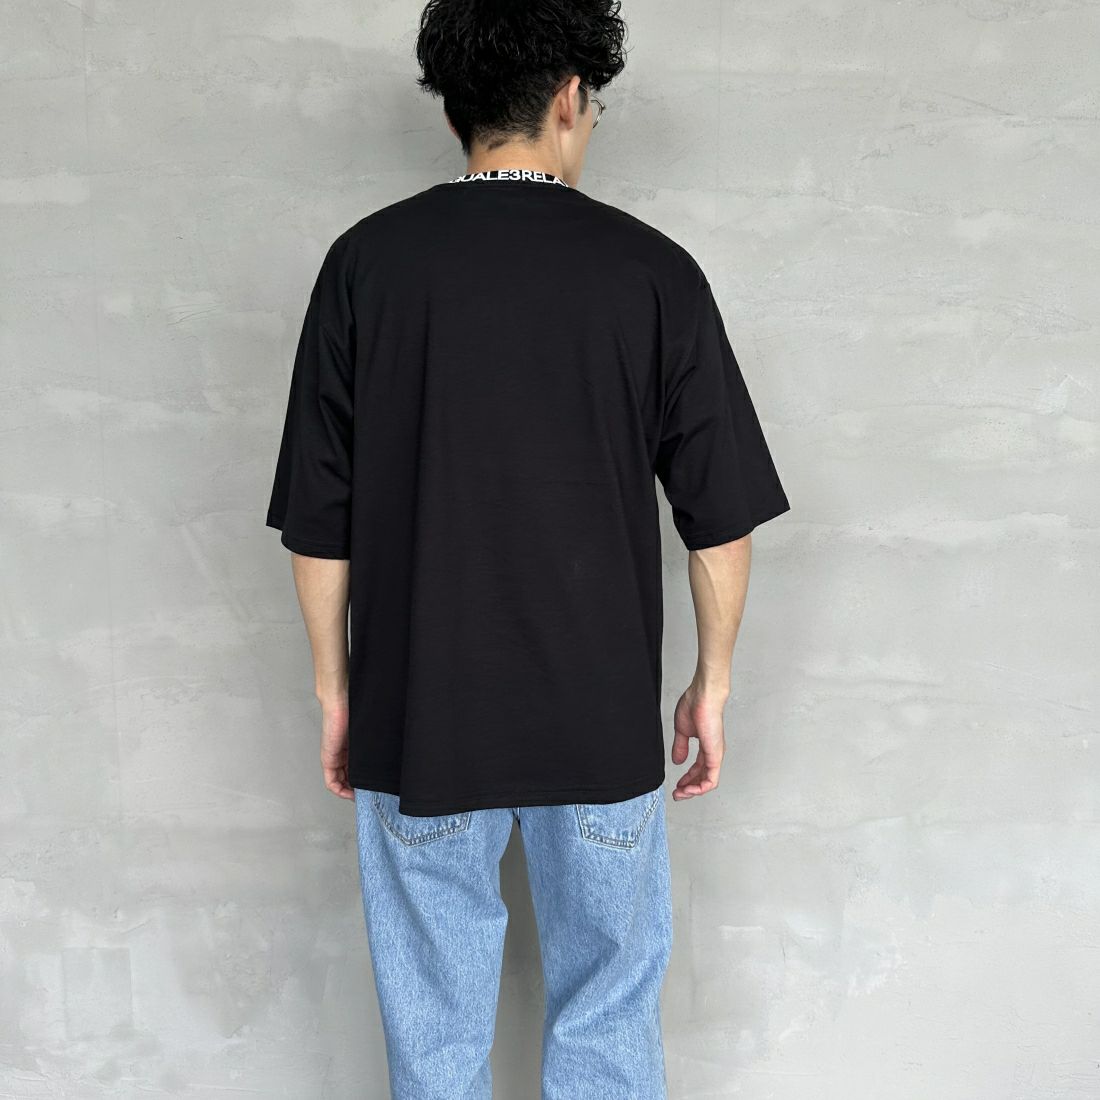 1PIU1UGUALE3 RELAX [ウノ ピゥ ウノ ウグァーレ トレ] 別注 ネックブランドロゴ ショートスリーブTシャツ [UST-24036IN-JF] BLACK &&モデル身長：168cm 着用サイズ：M&&